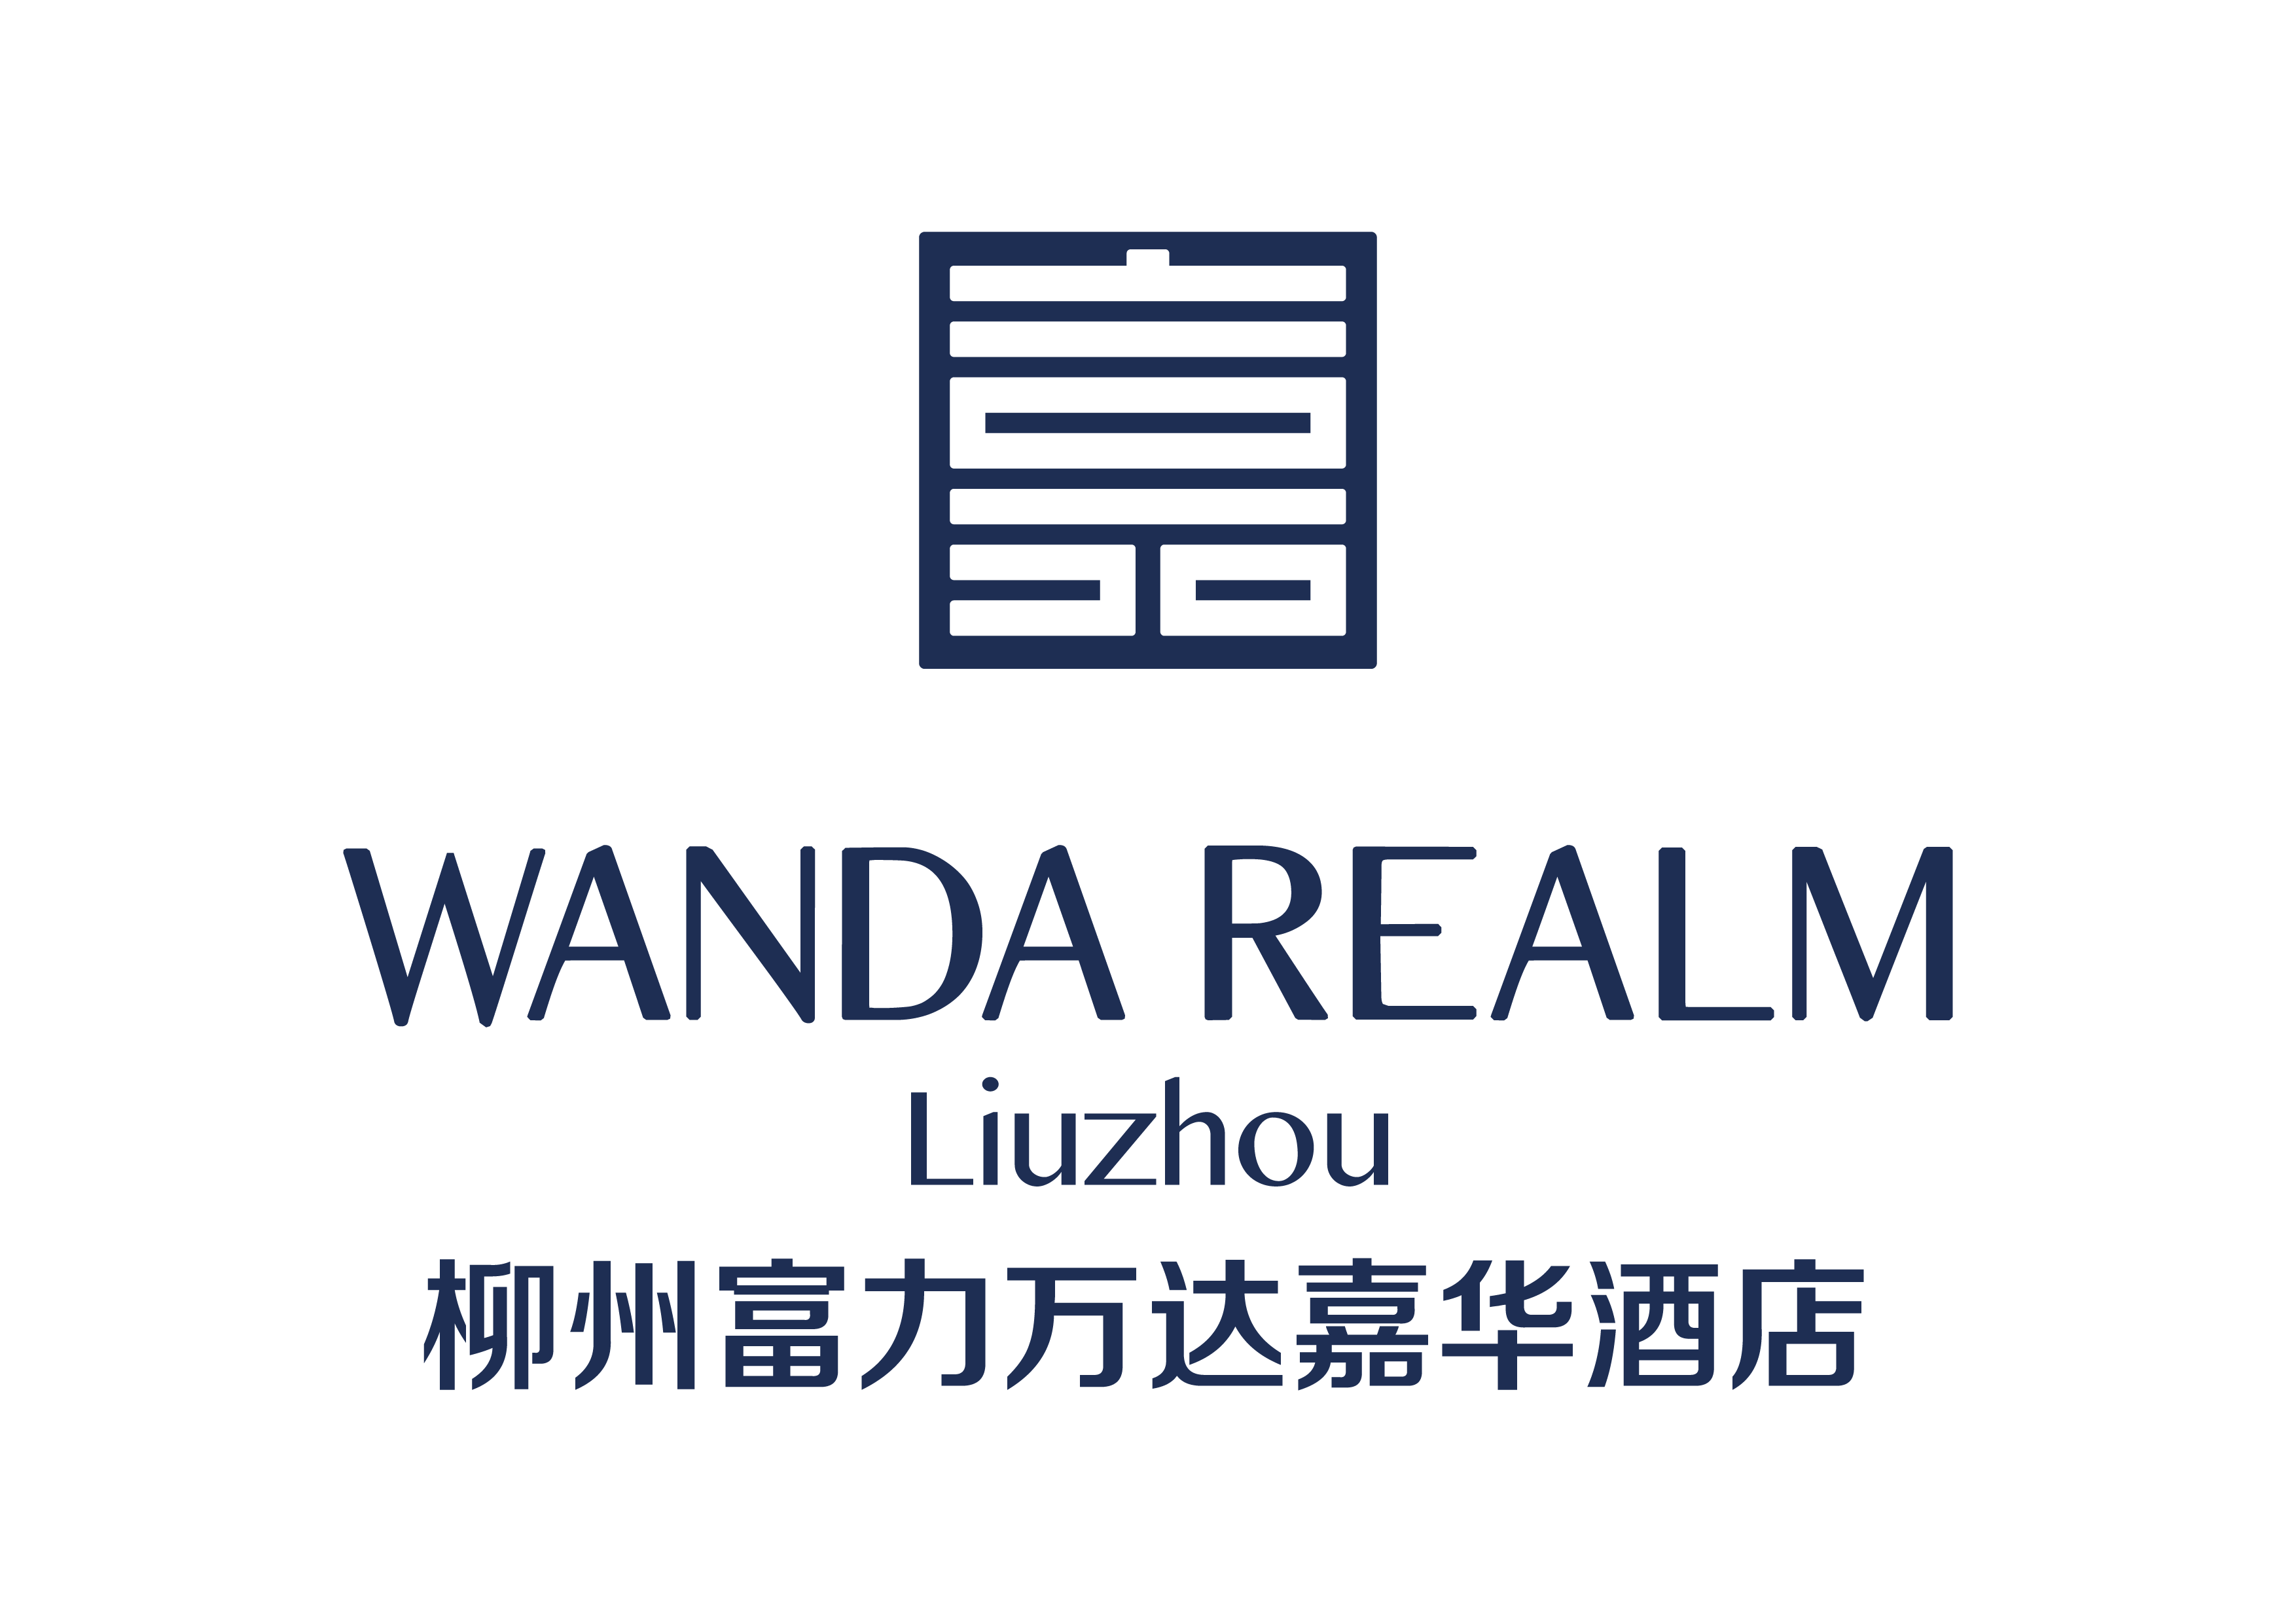 柳州万达嘉华酒店Wanda Realm Liuzhou